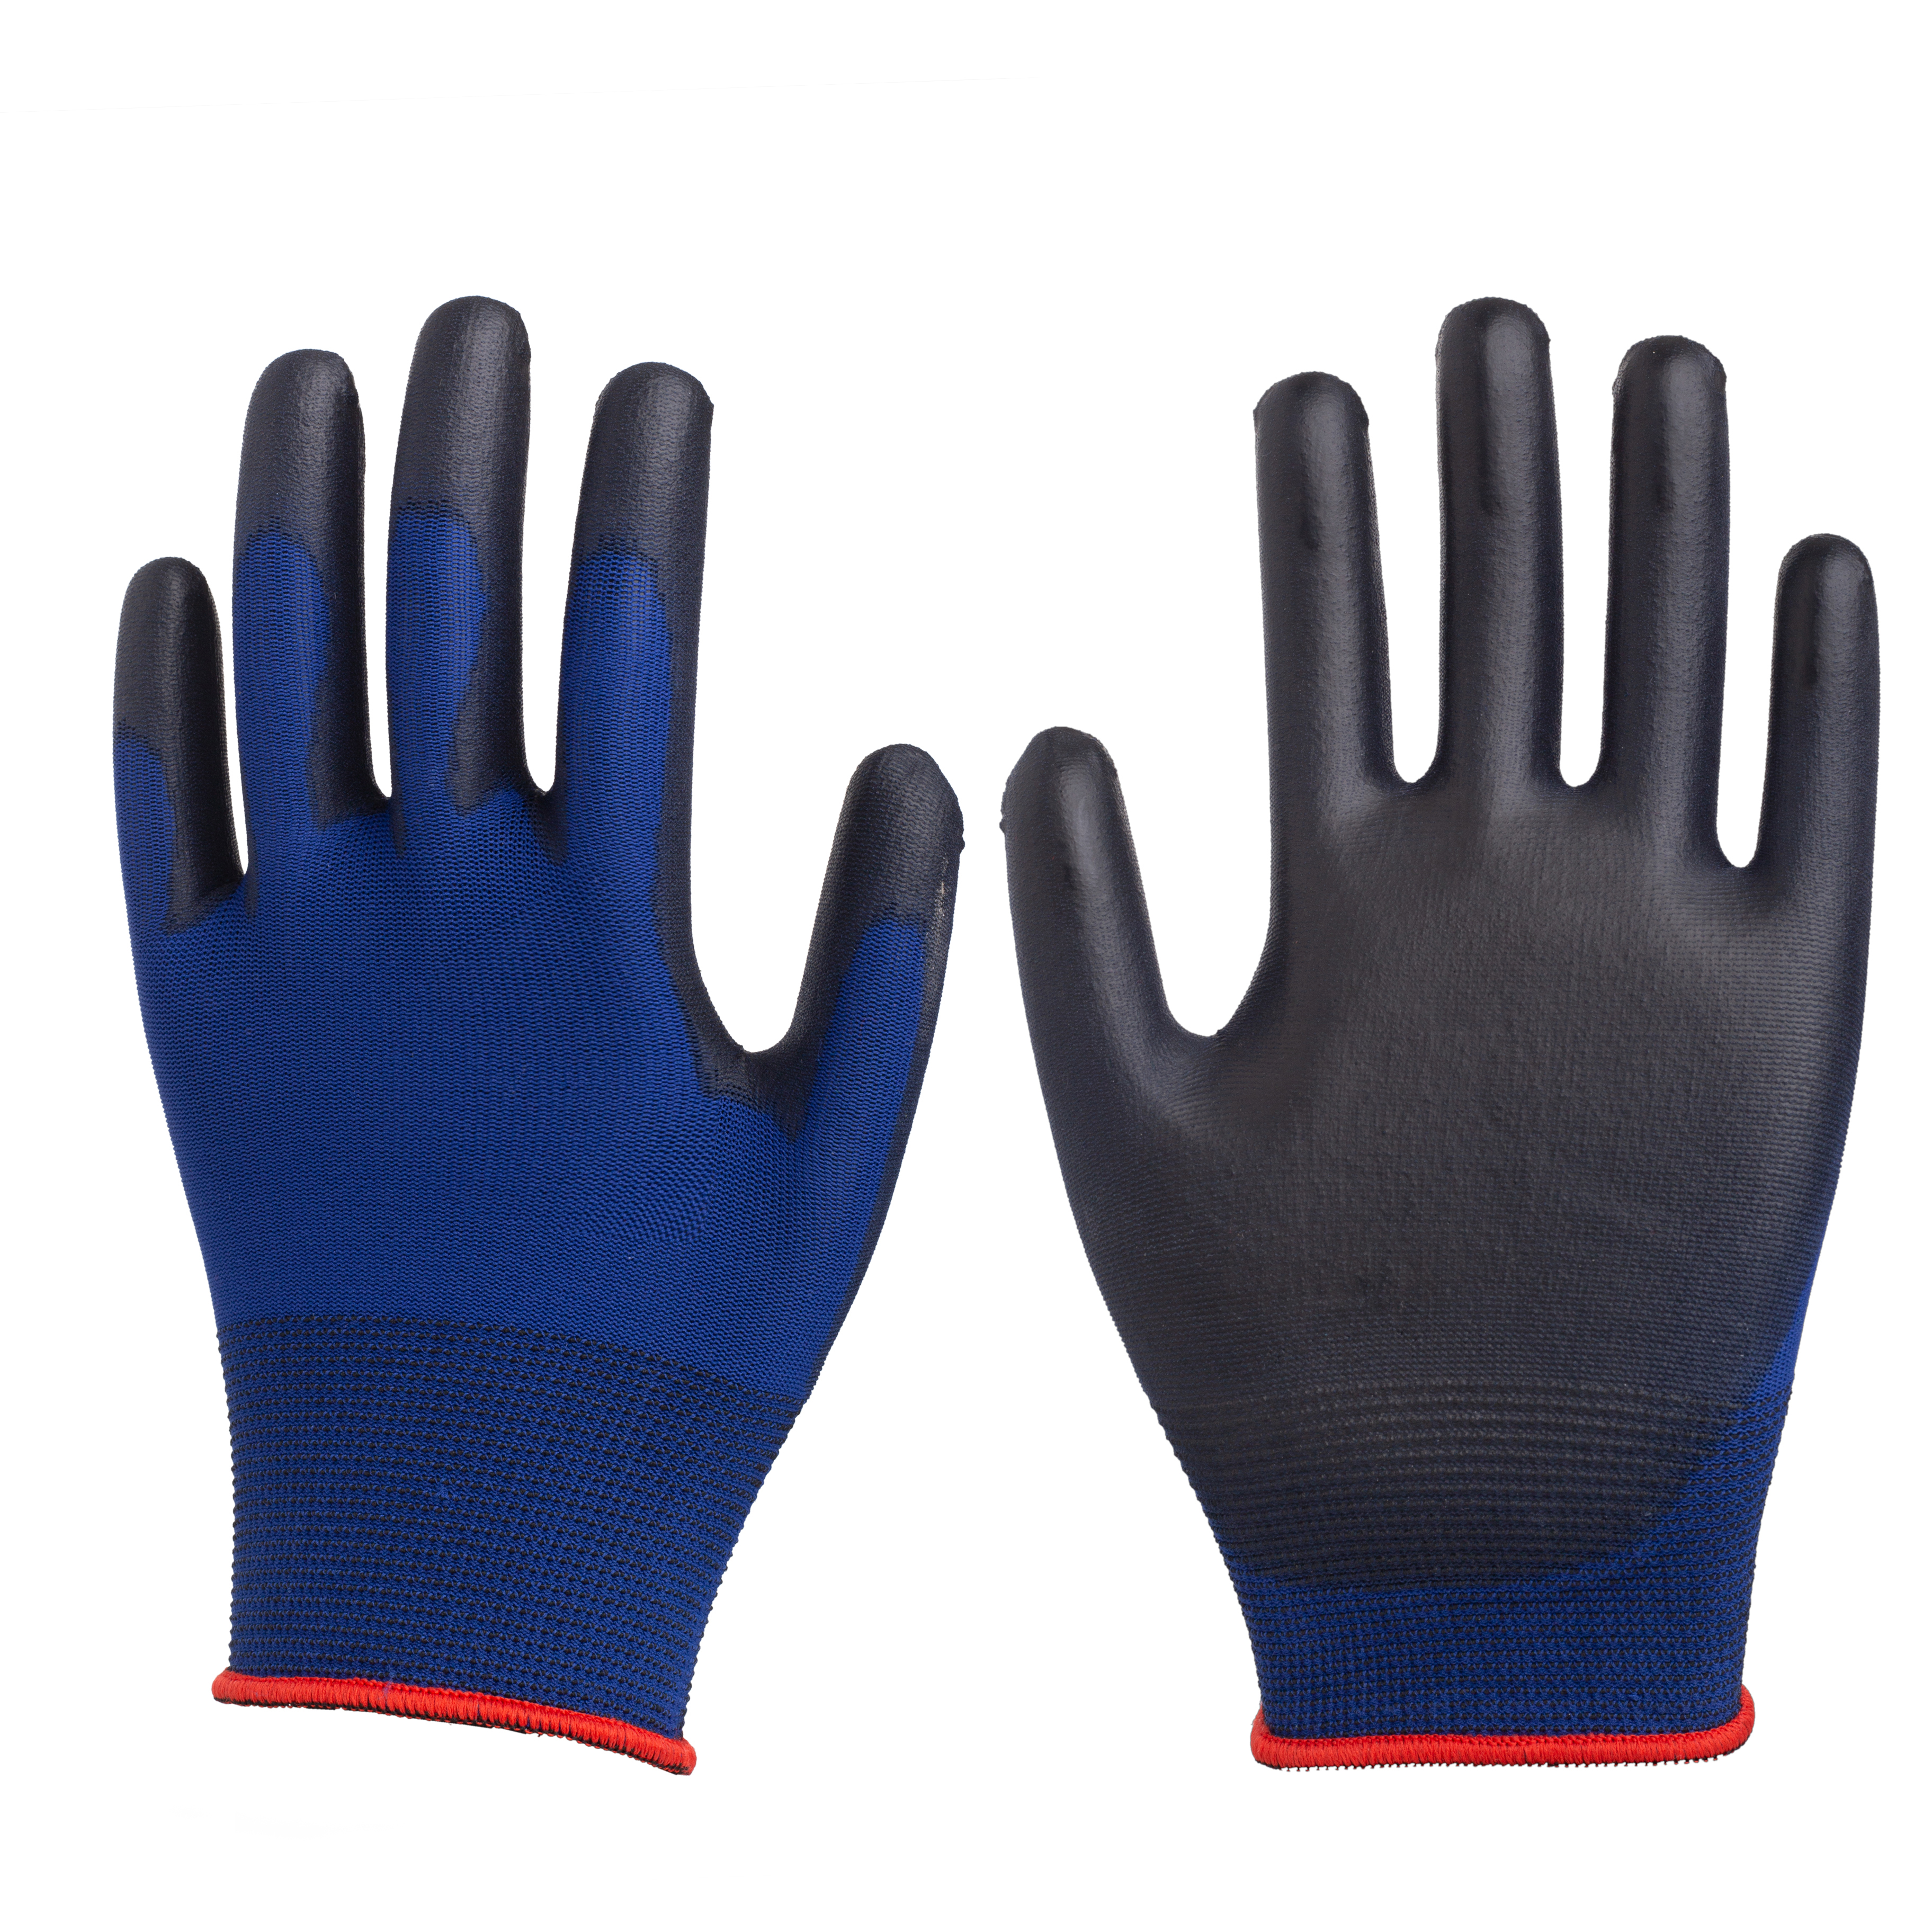 18G nylon glove PU palm coated